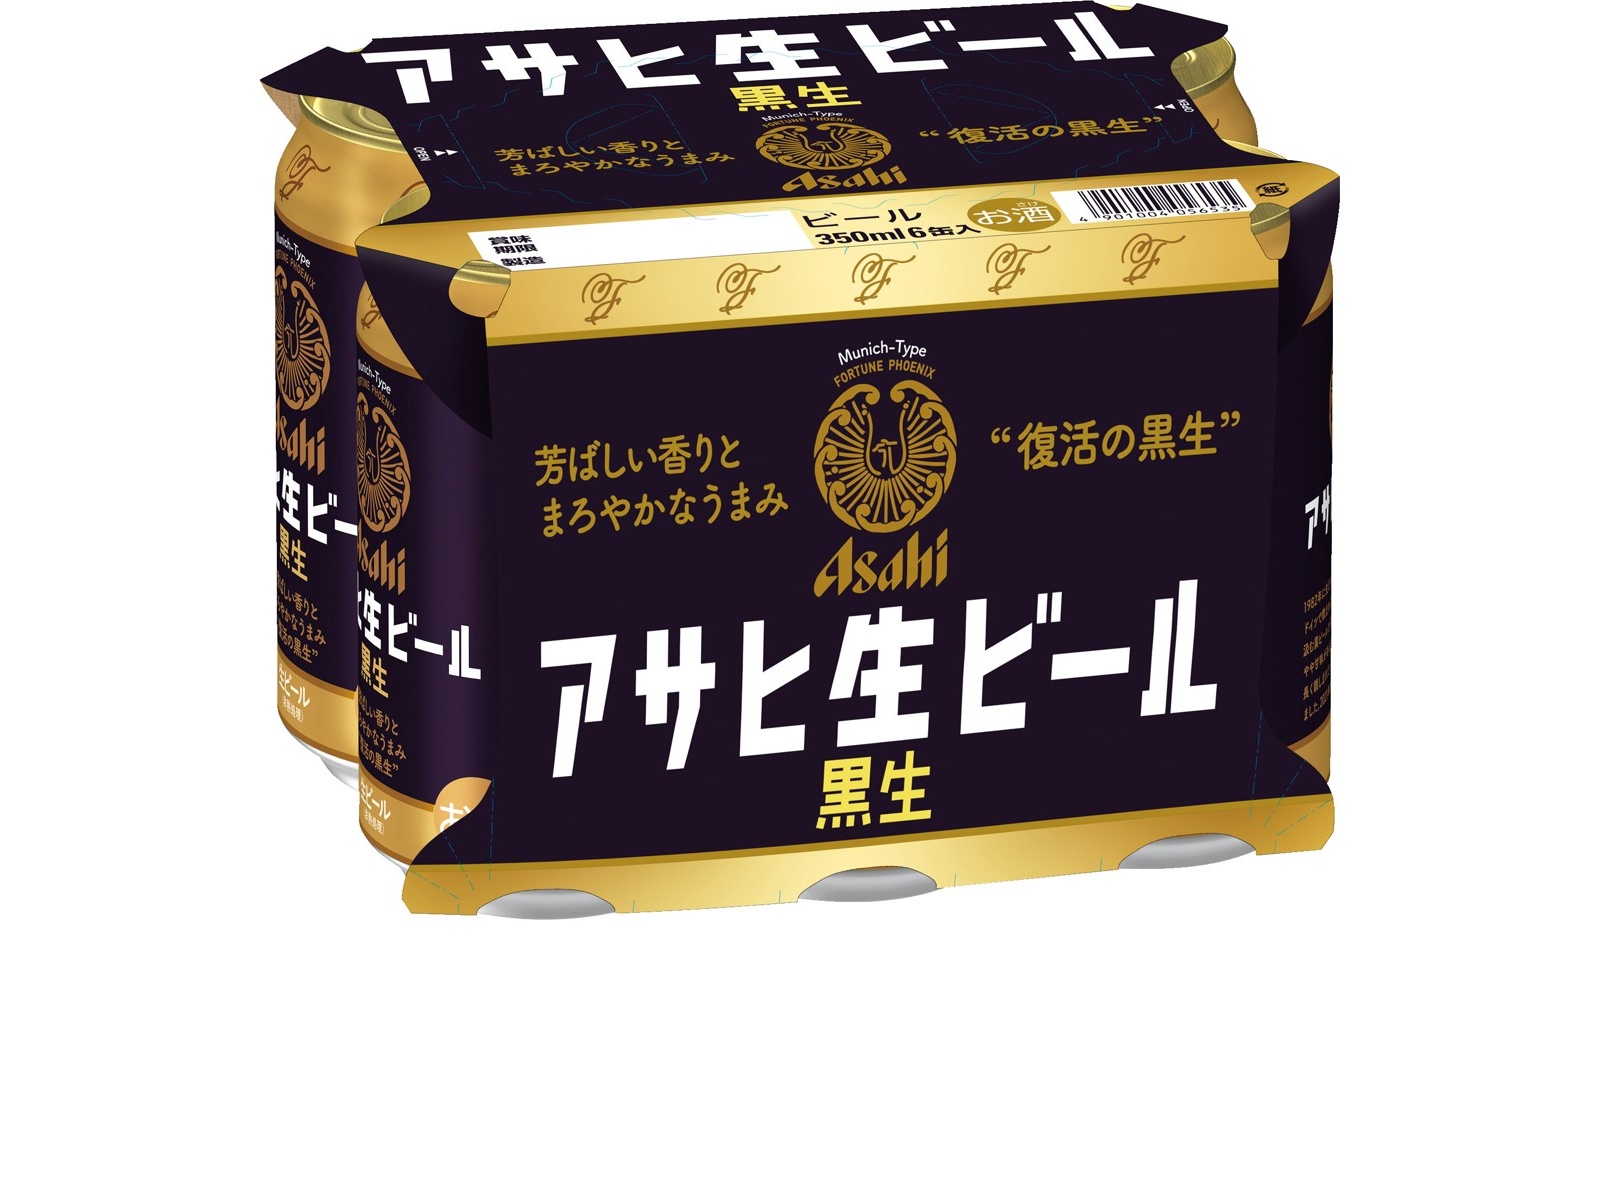 アサヒ アサヒ生ビール黒生 350ml×6缶組| コープこうべネット